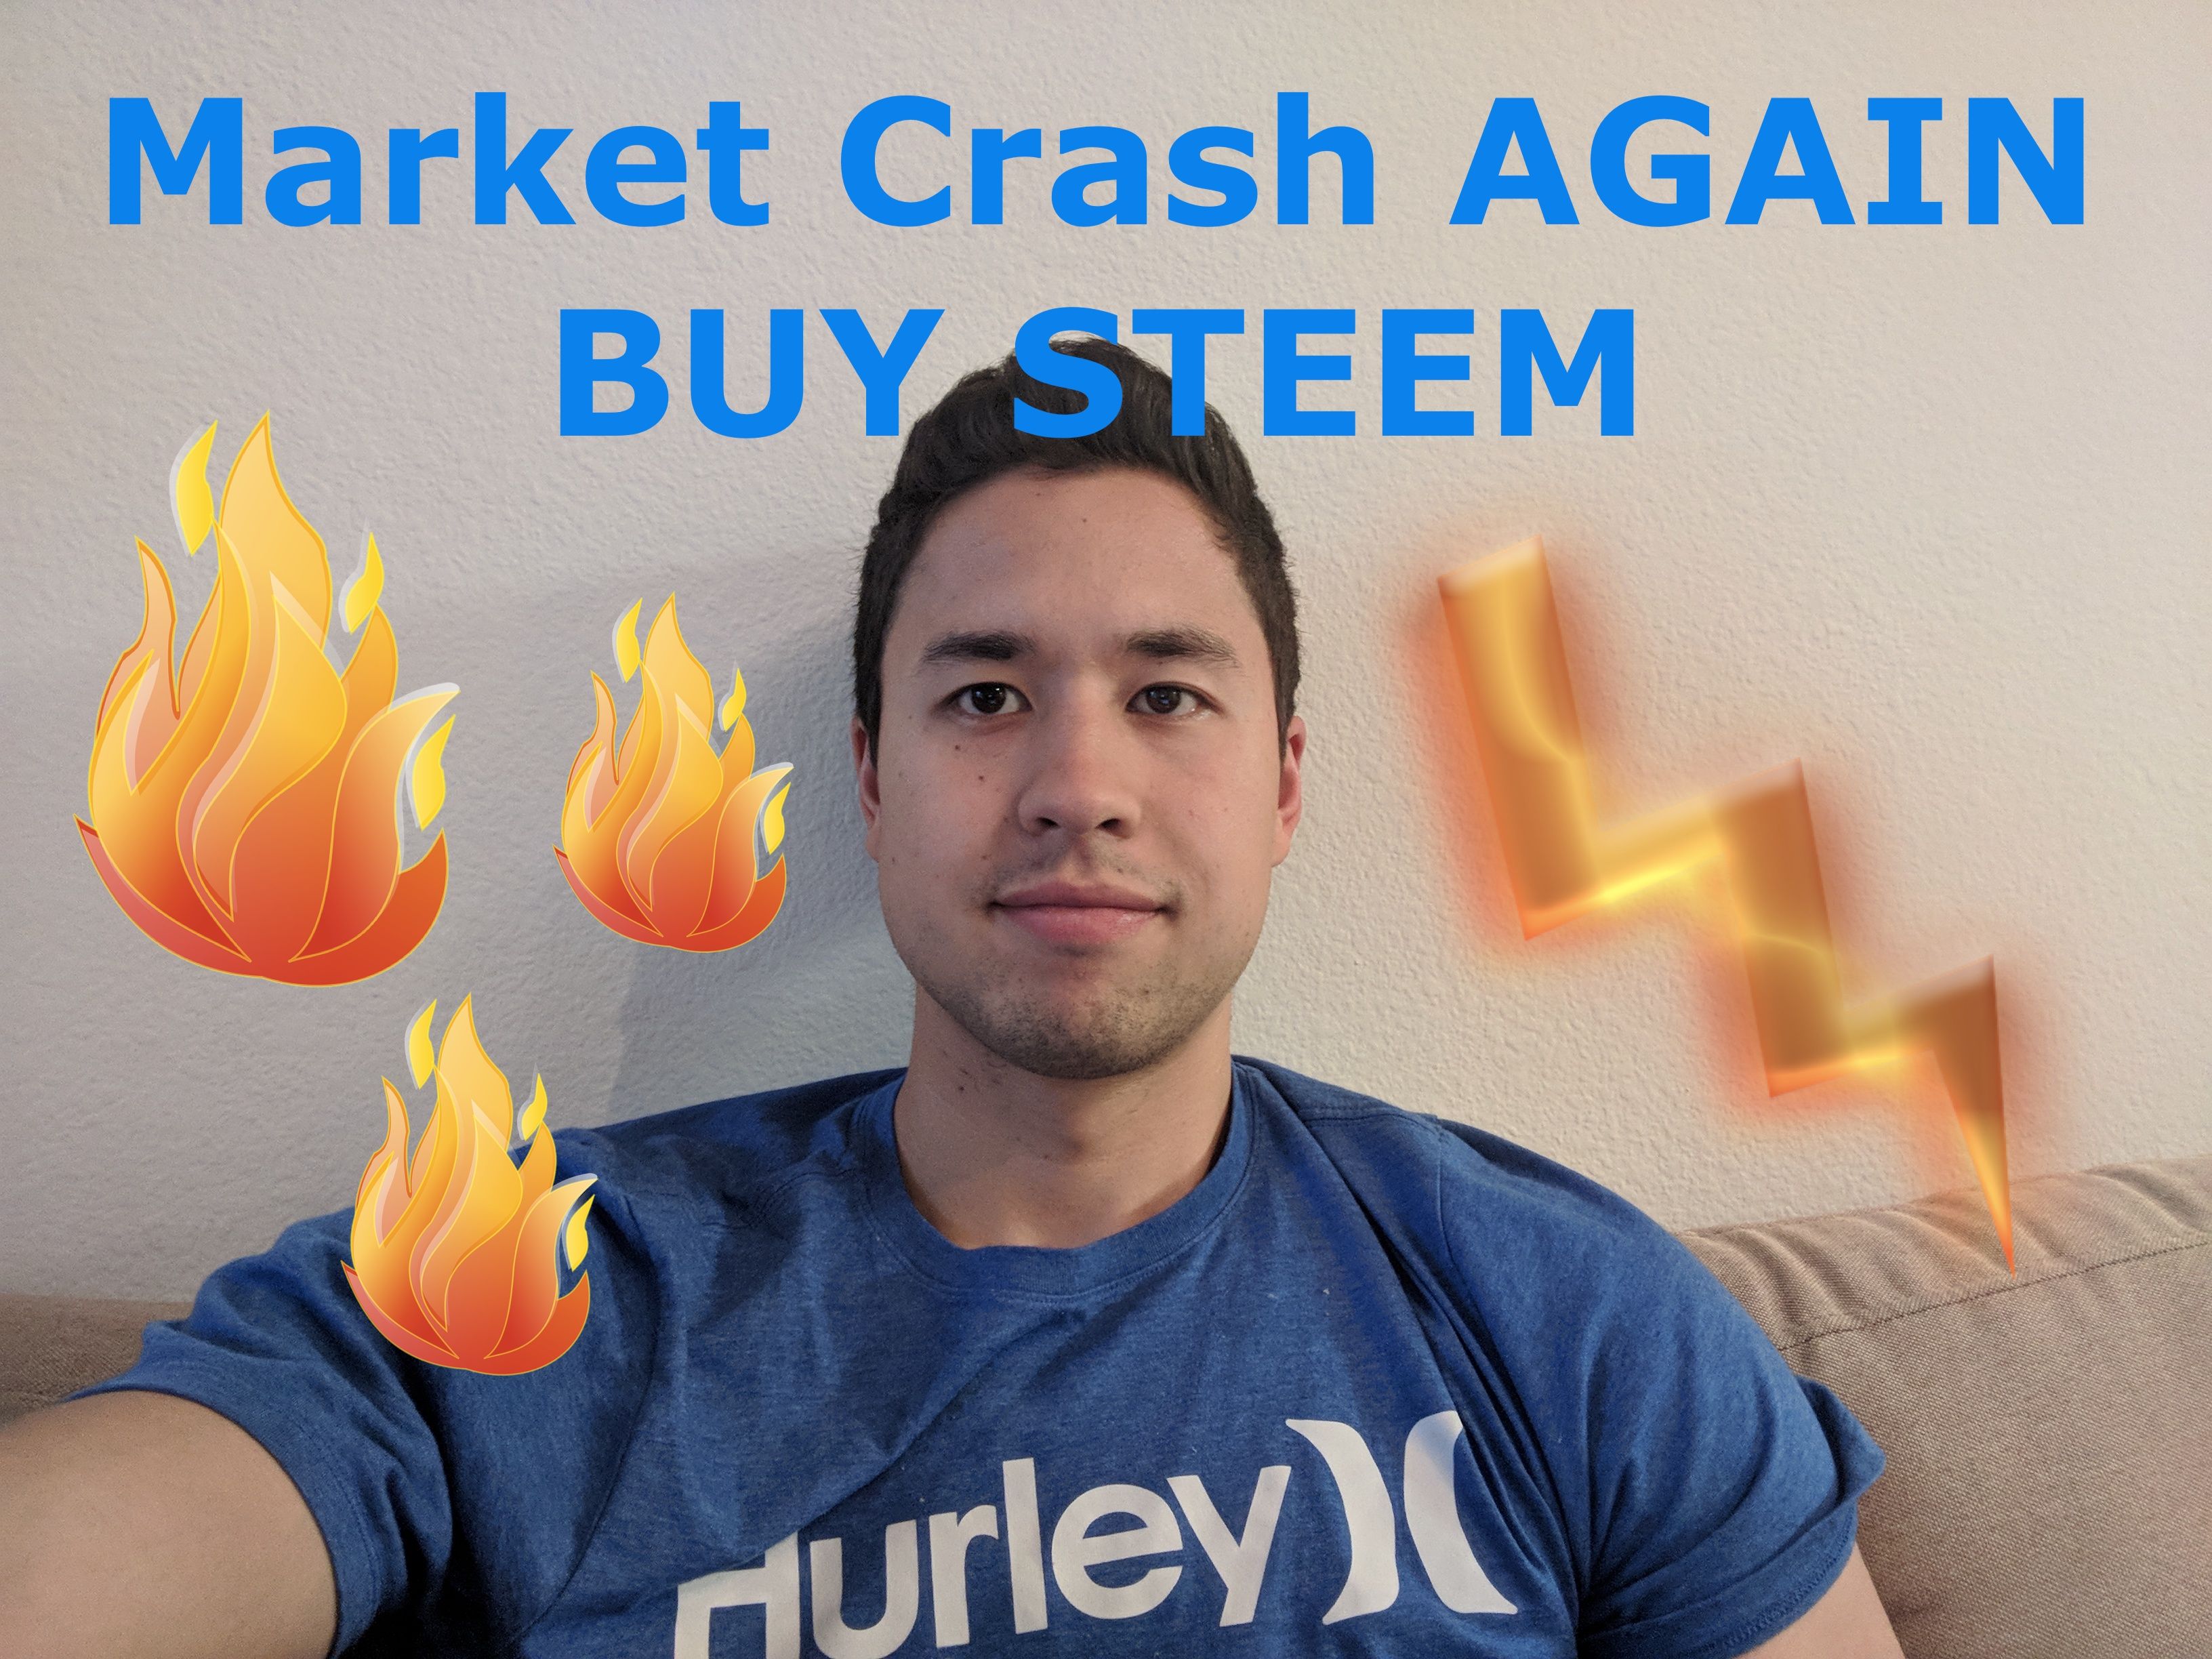 Market Crash Buy Steem.jpg